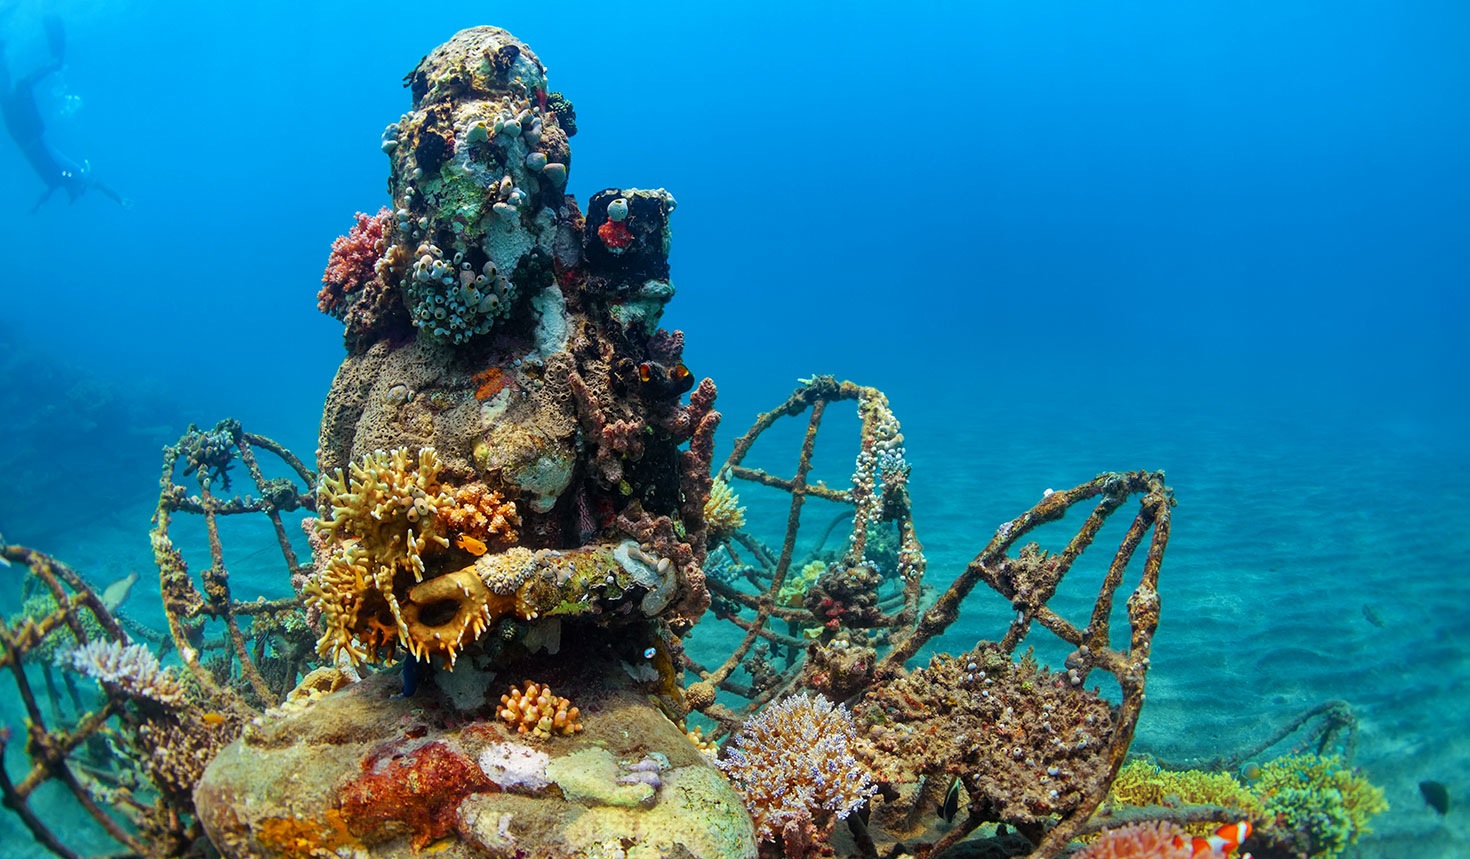 Pemuteran thuộc Bali, Indonesia là nơi có những điểm lặn biển ngắm san hô mọc kín các tượng Phật rất thú vị. 